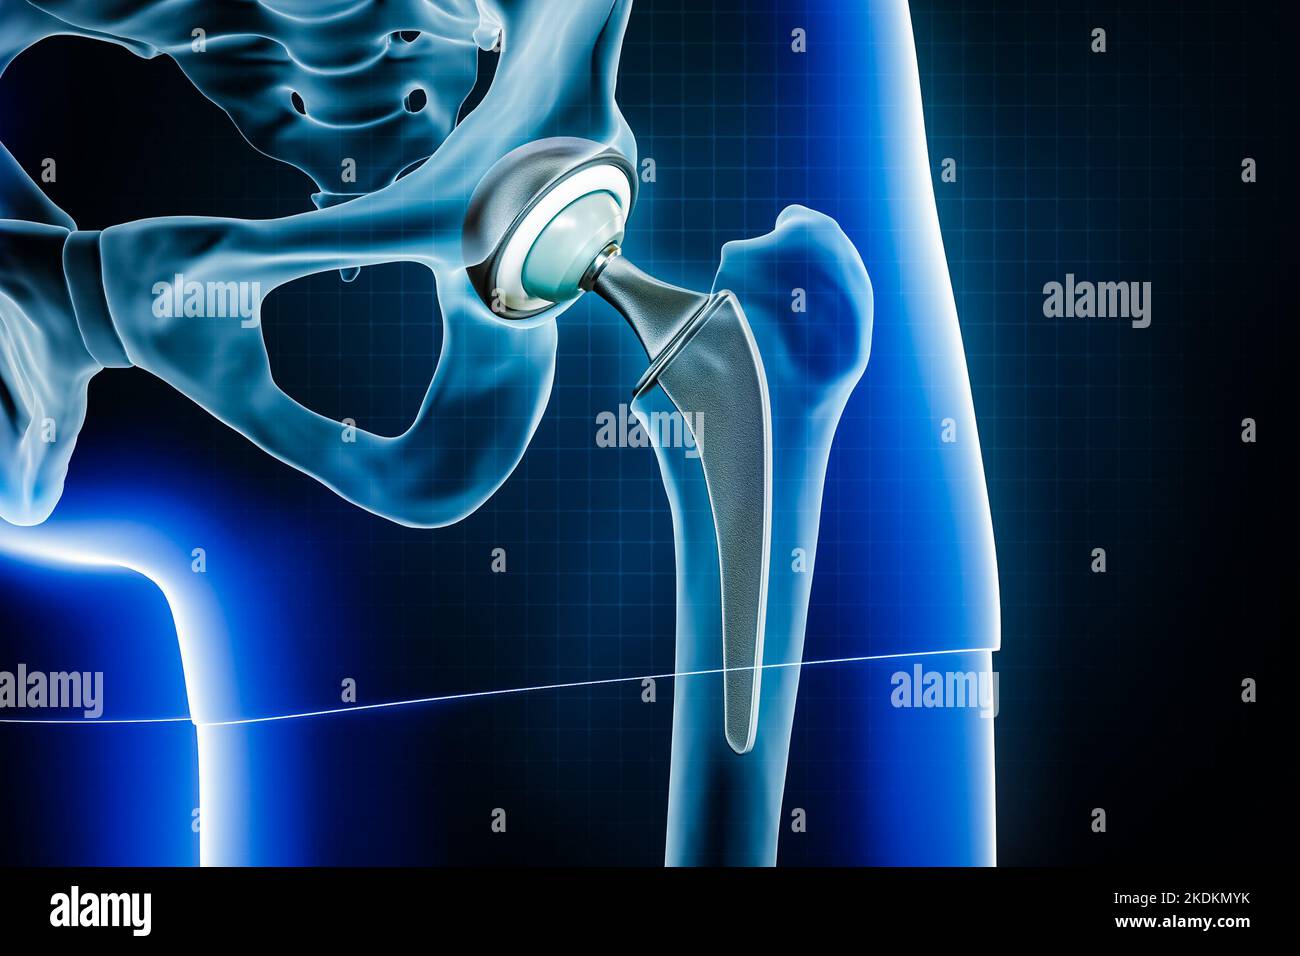 Protesi femorale dell'anca o impianto. Illustrazione della sostituzione totale dell'articolazione dell'anca o dell'artroplastica 3D. Medico e sanitario, arthrit Foto Stock